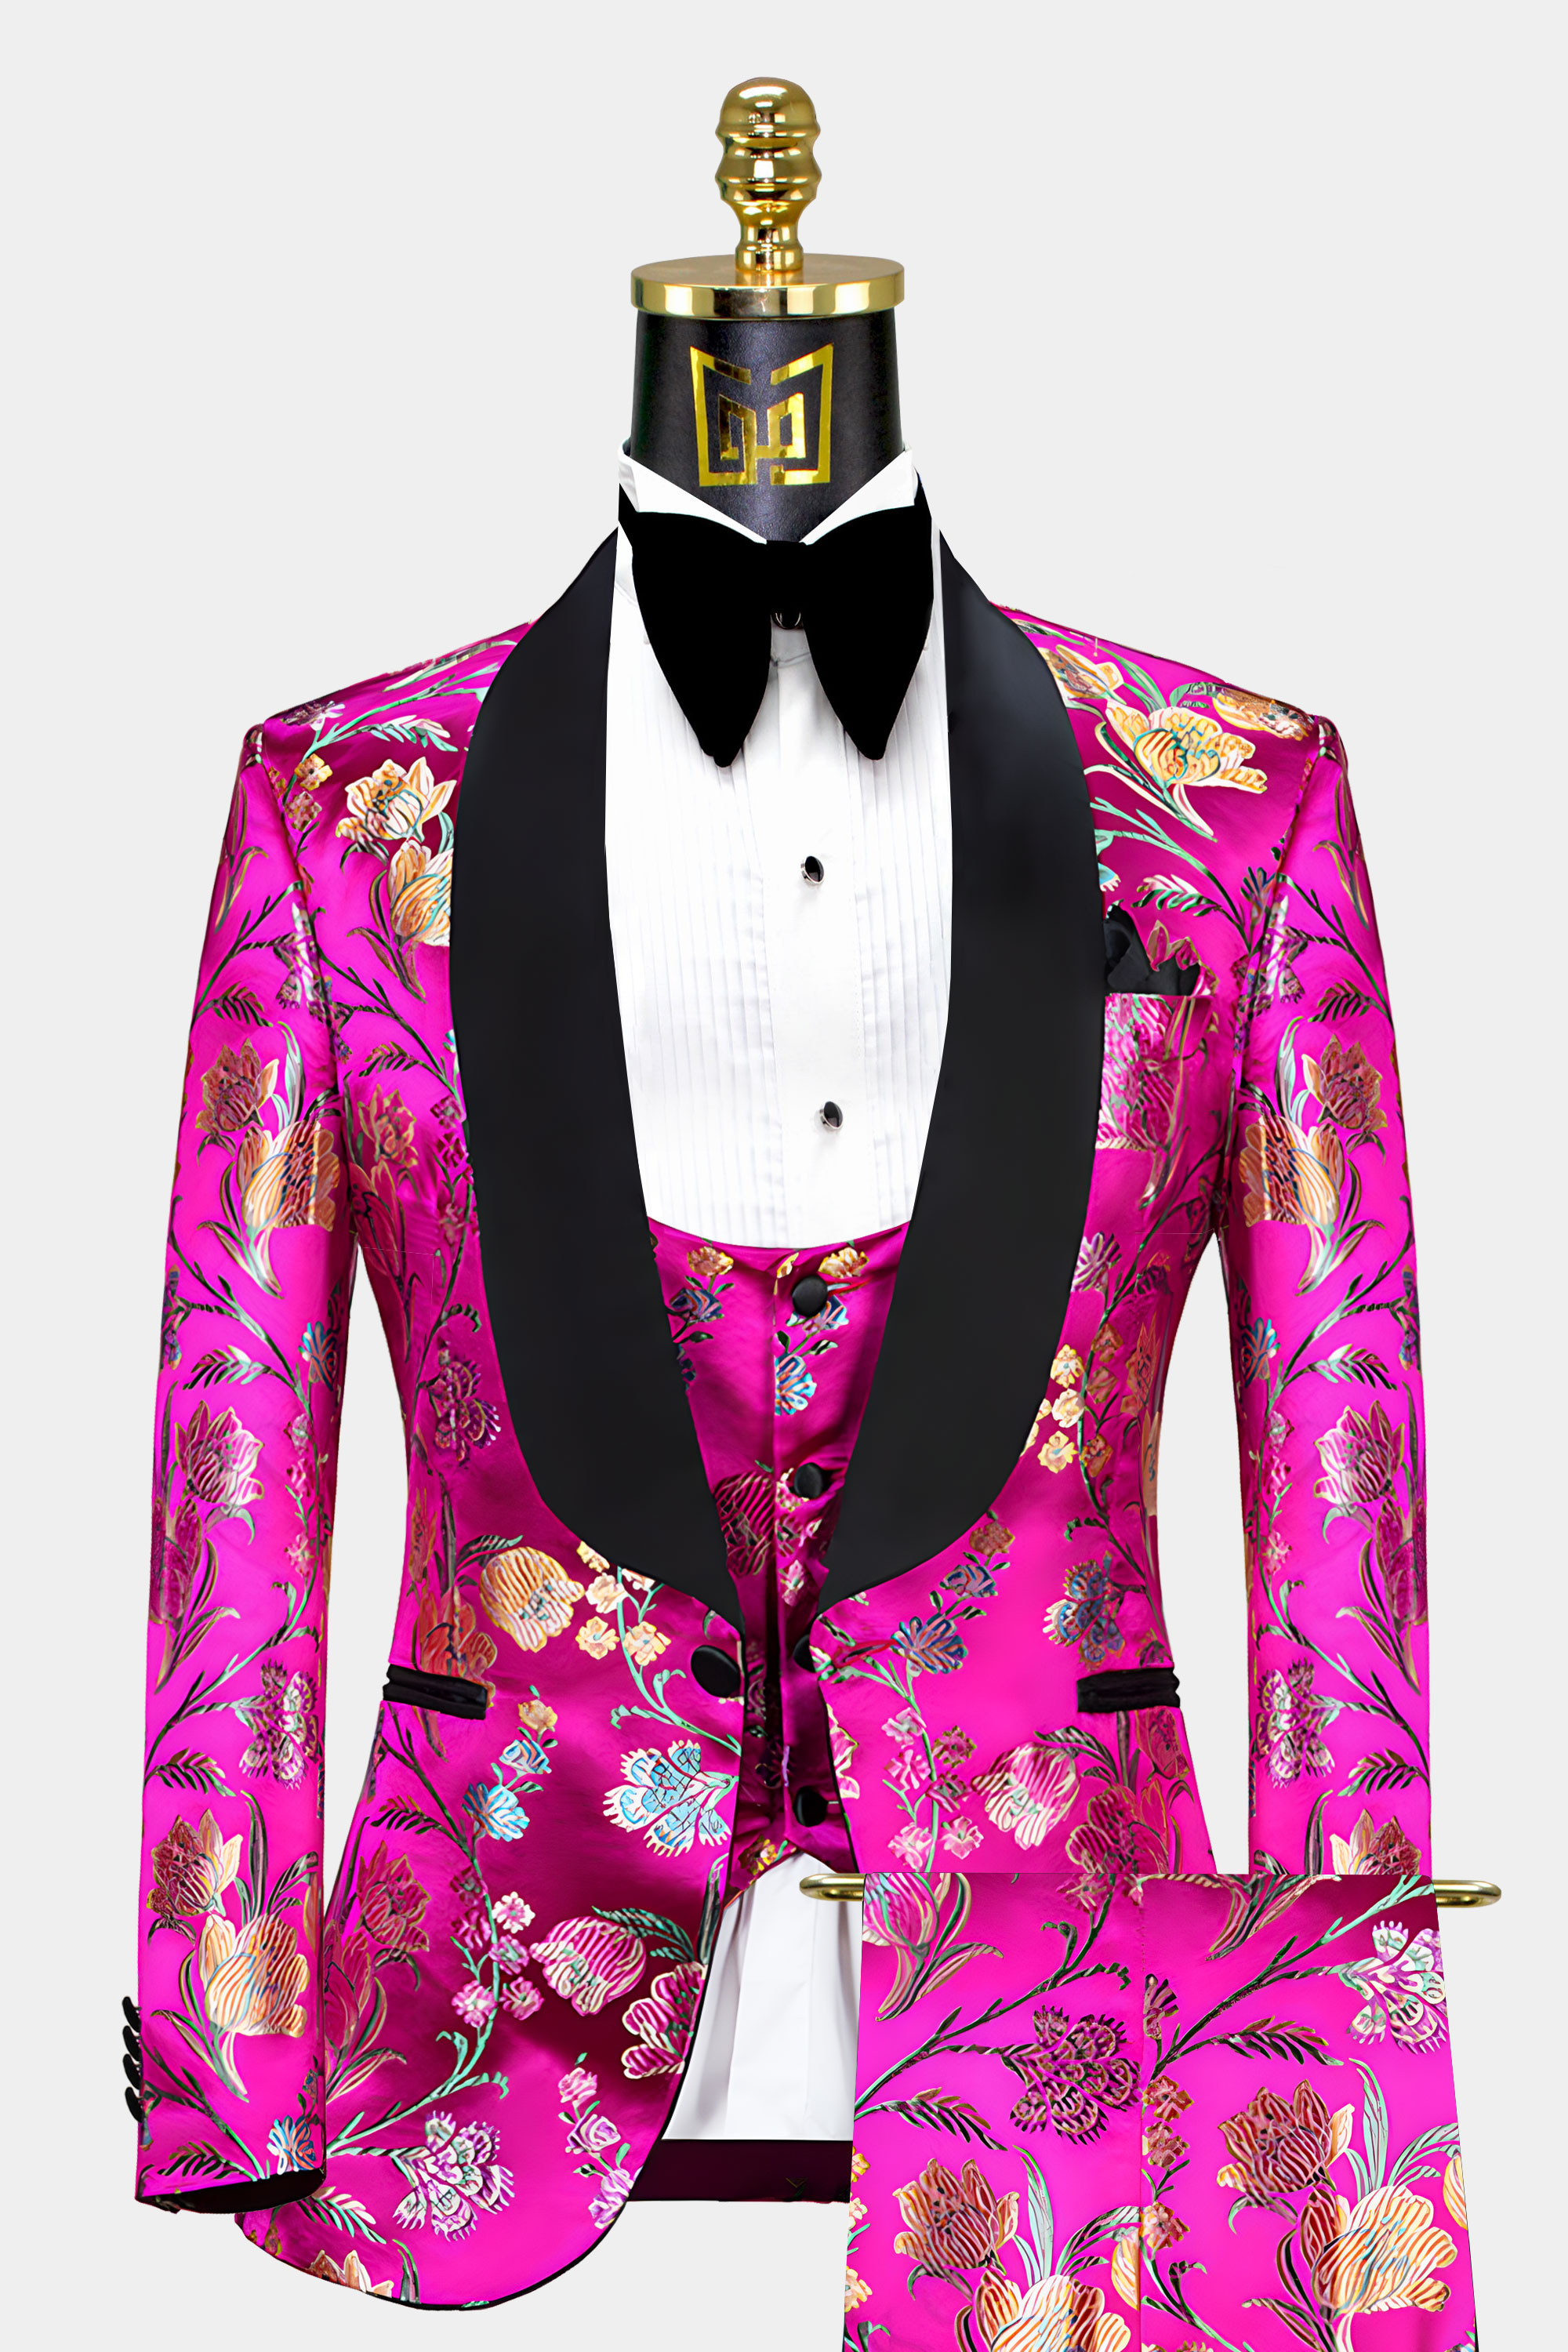 Mens-Hot-Pink-Floral-Tuxedo-Wedding-Groom-Prom-Suit-from-Gentlemansguru.com